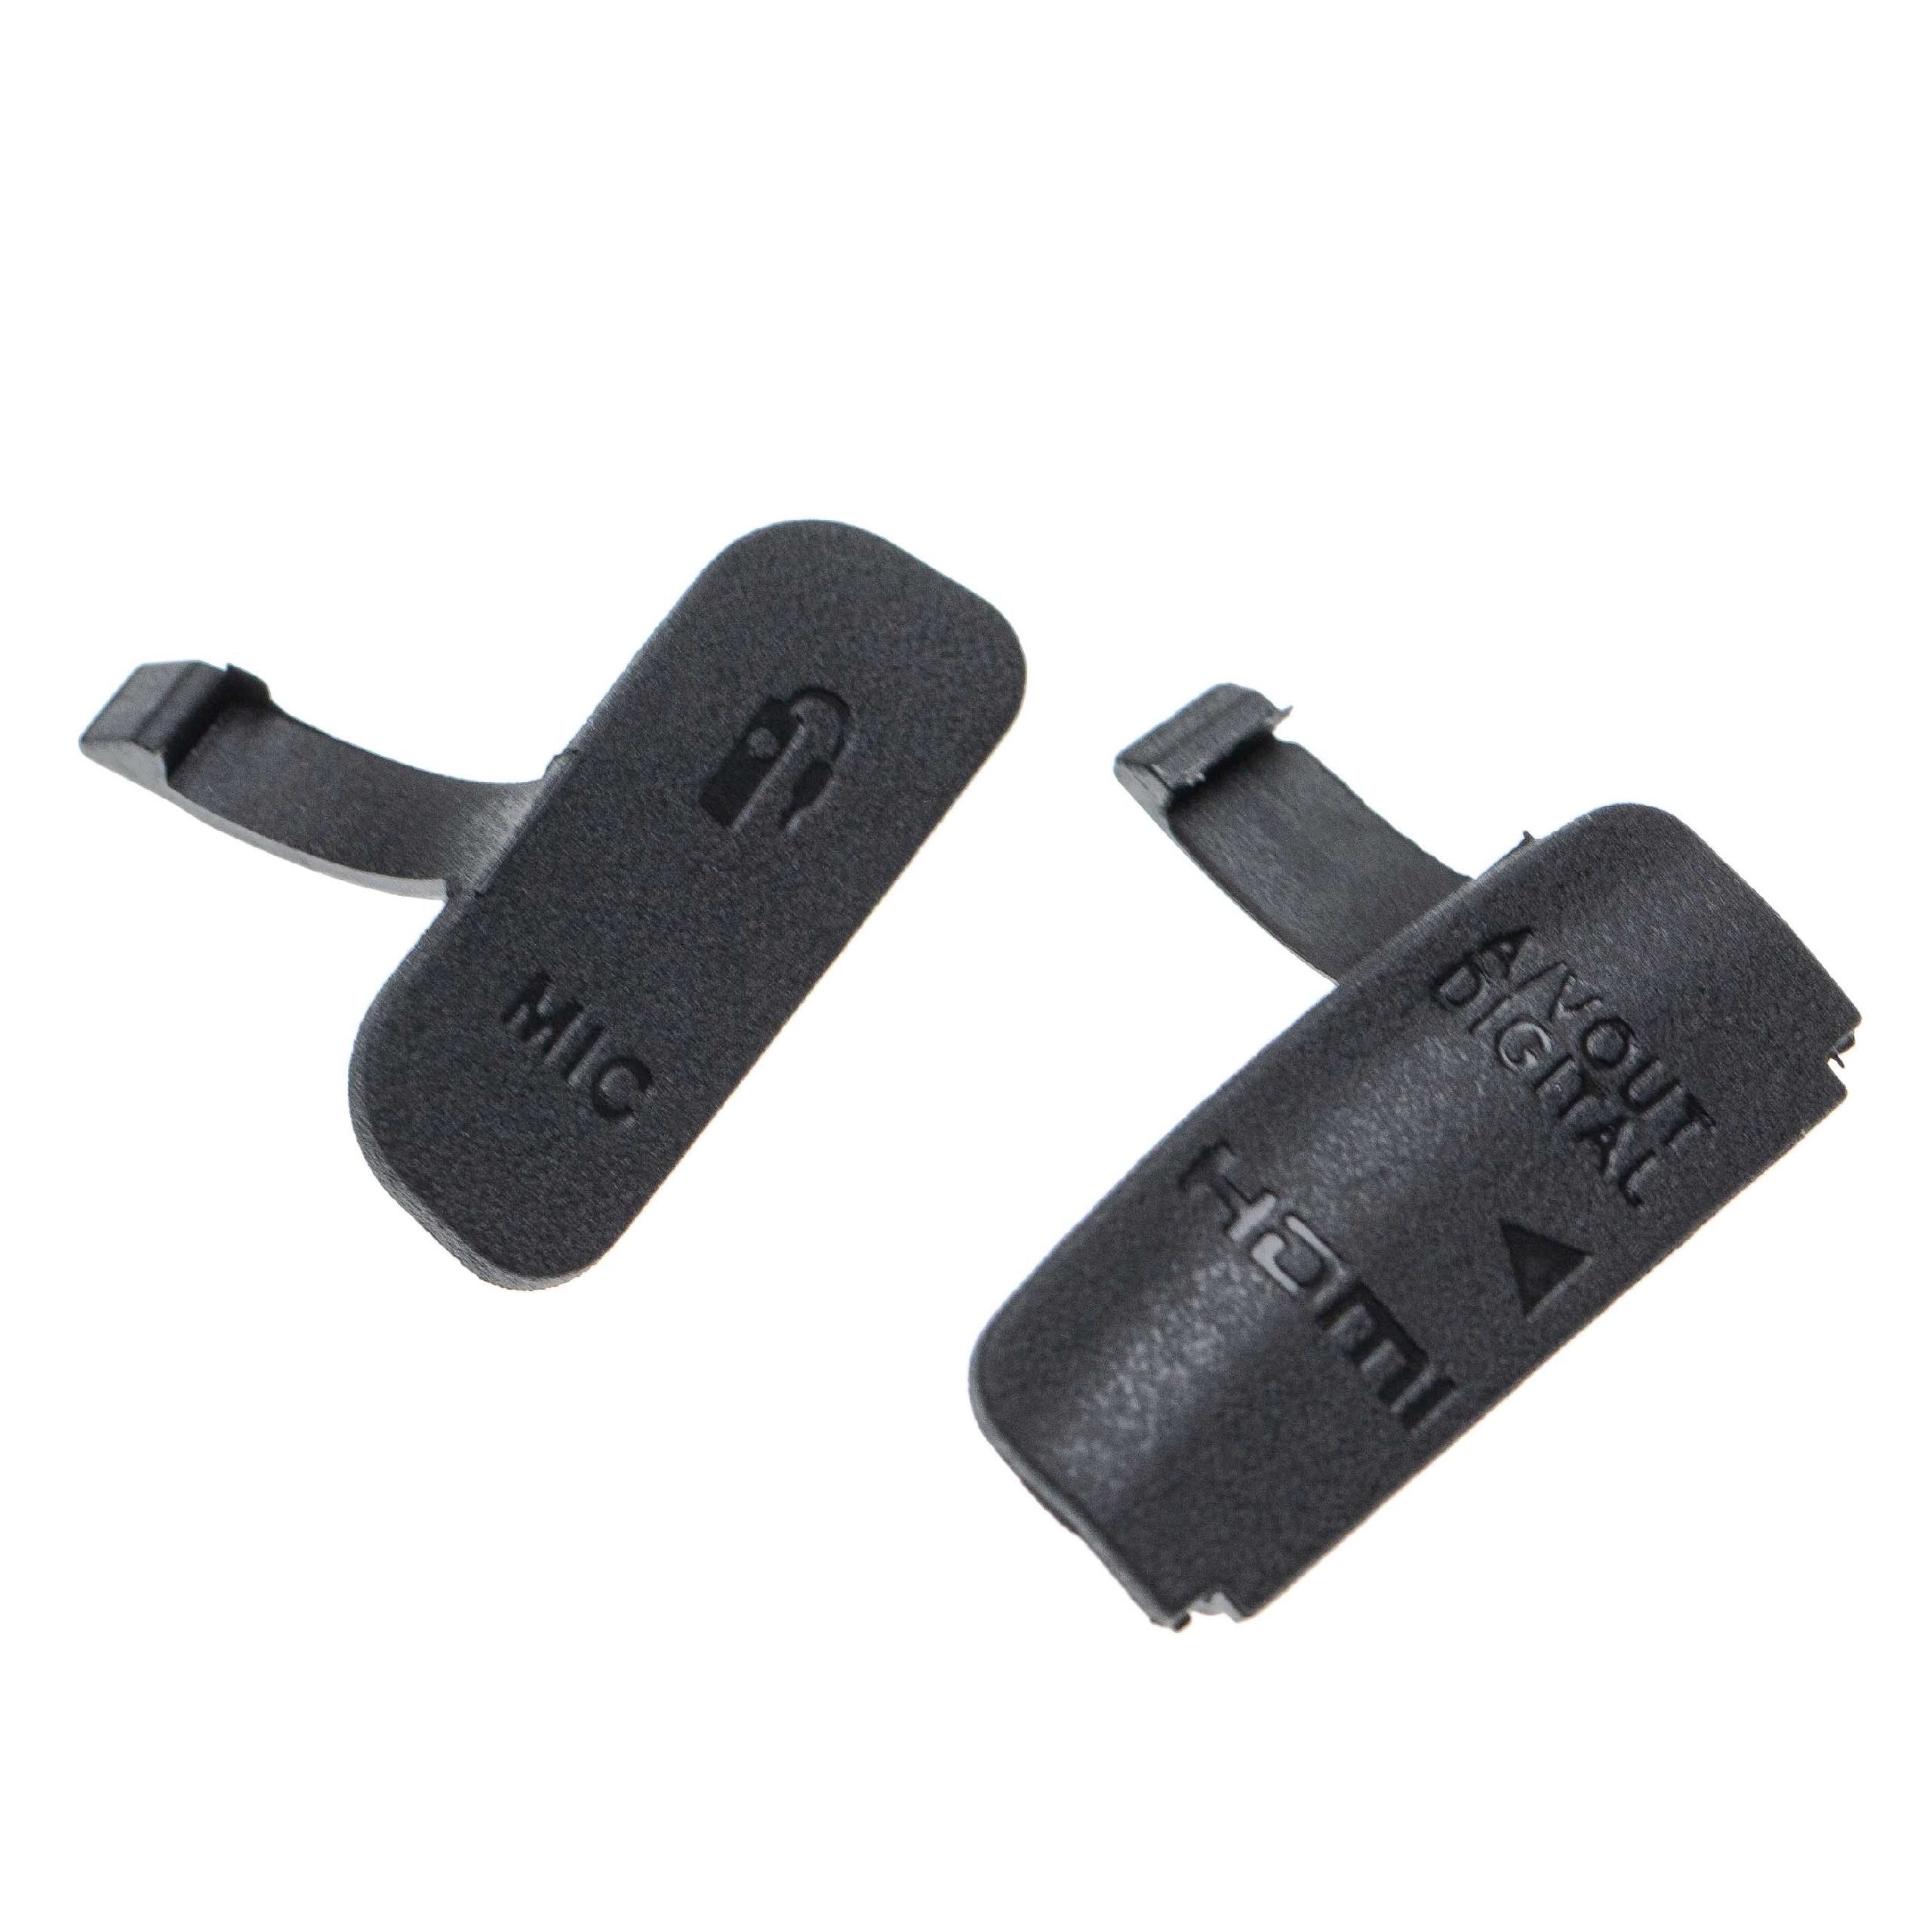 2x Cache-connecteurs pour appareil photo Canon EOS 600D - Capuchons de rechange, gomme, noir